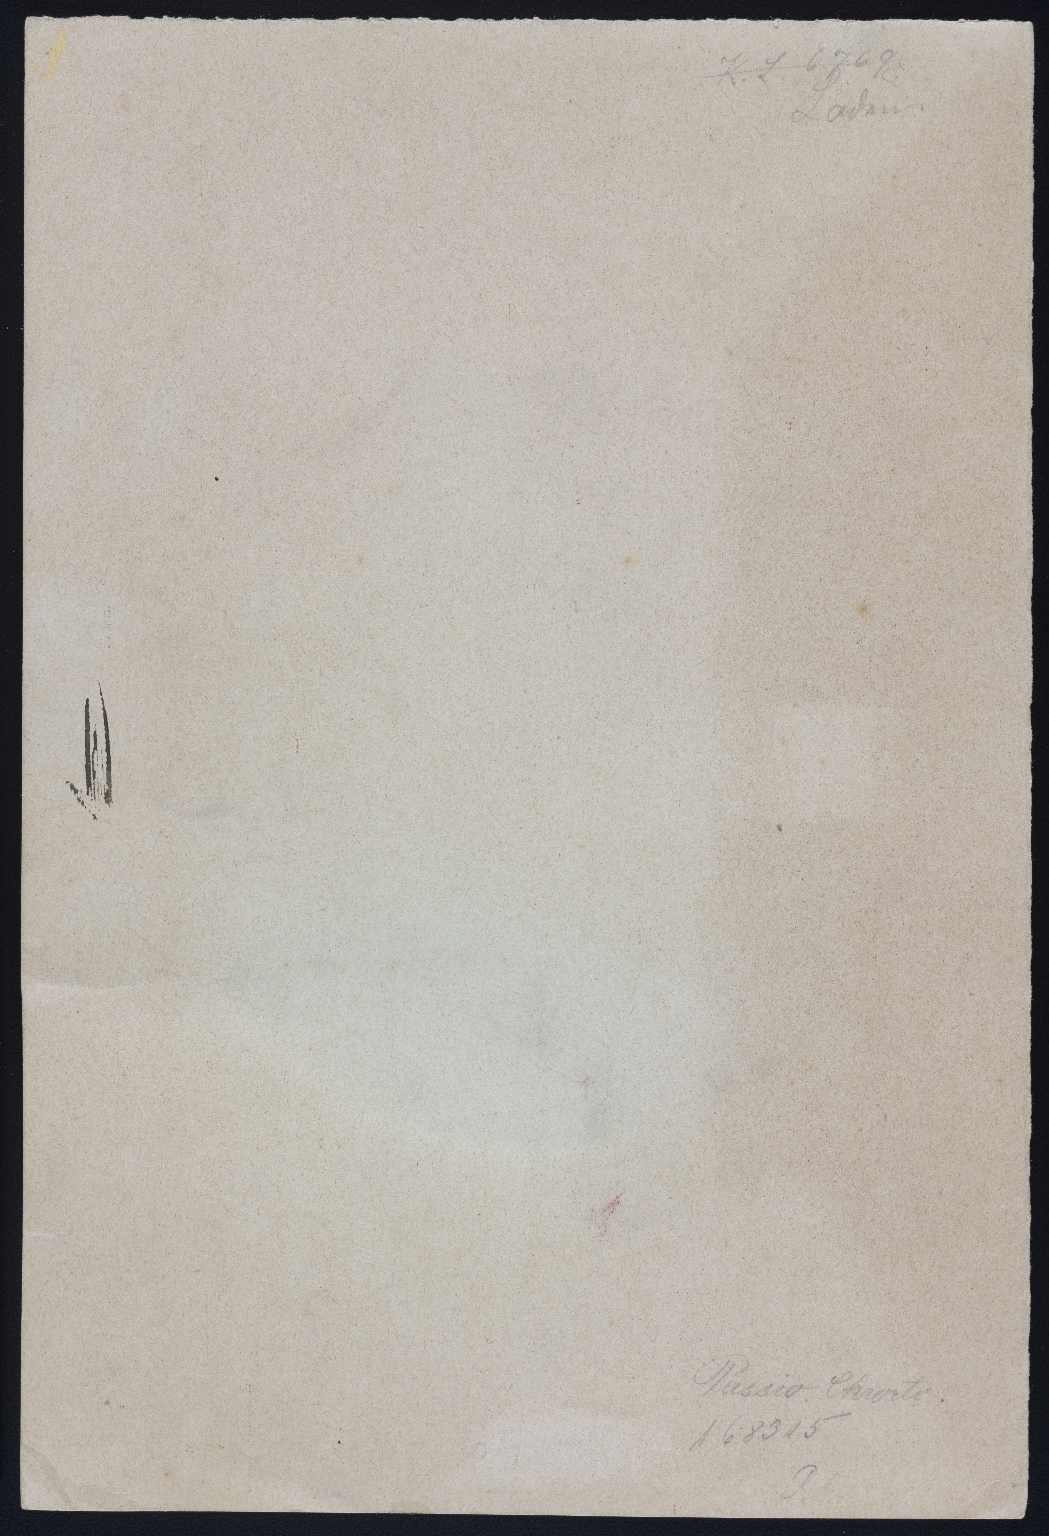 Micrographic illuminated manuscript (MS 425)